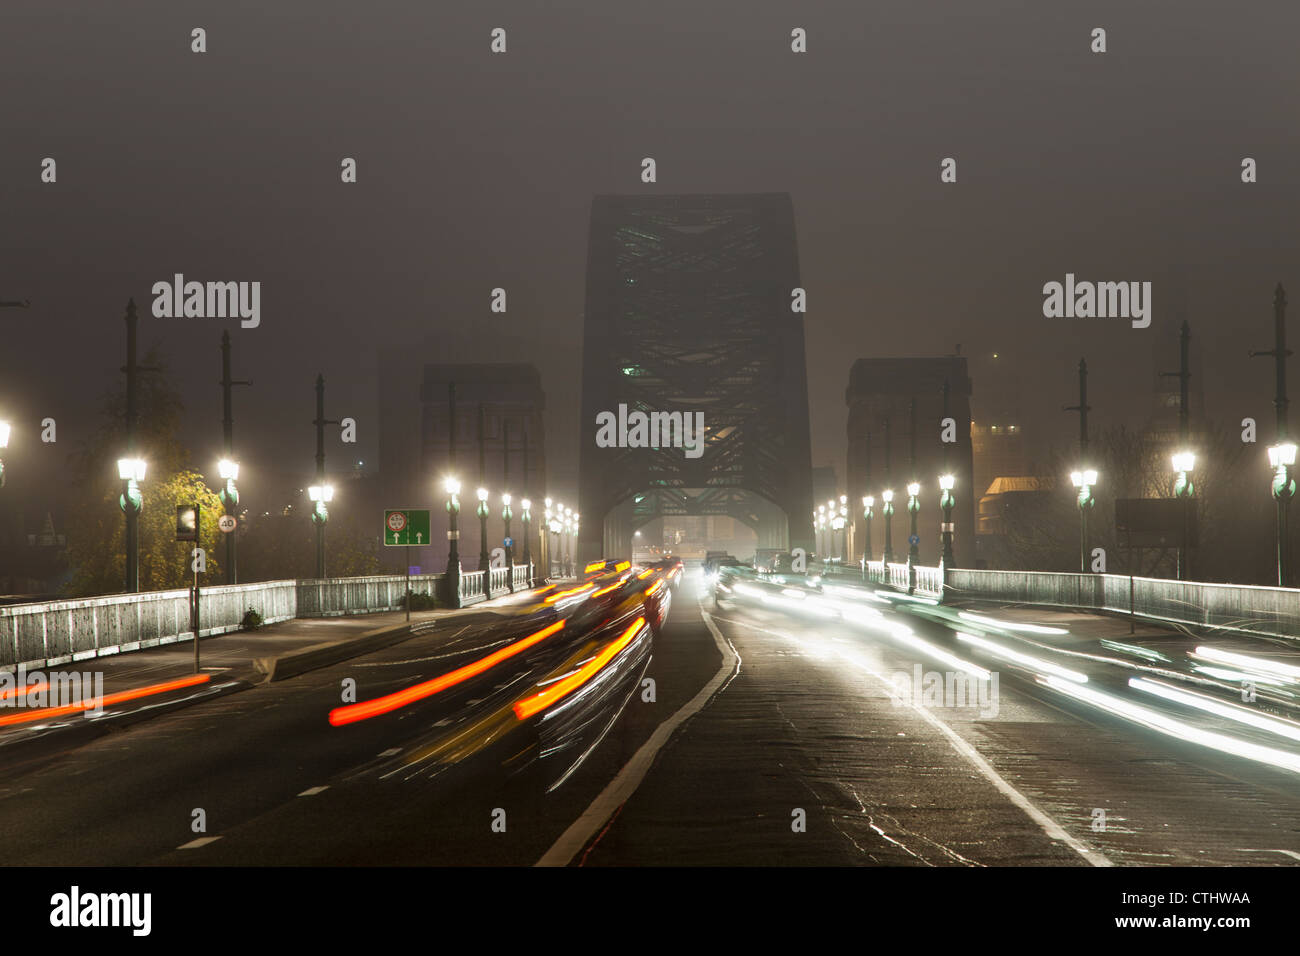 Licht-Strecken des Fahrzeug eingebauten Scheinwerfern und Rückleuchten an einer belebten Straße, die führt zu einer Brücke in der Nacht; Newcastle, England Stockfoto